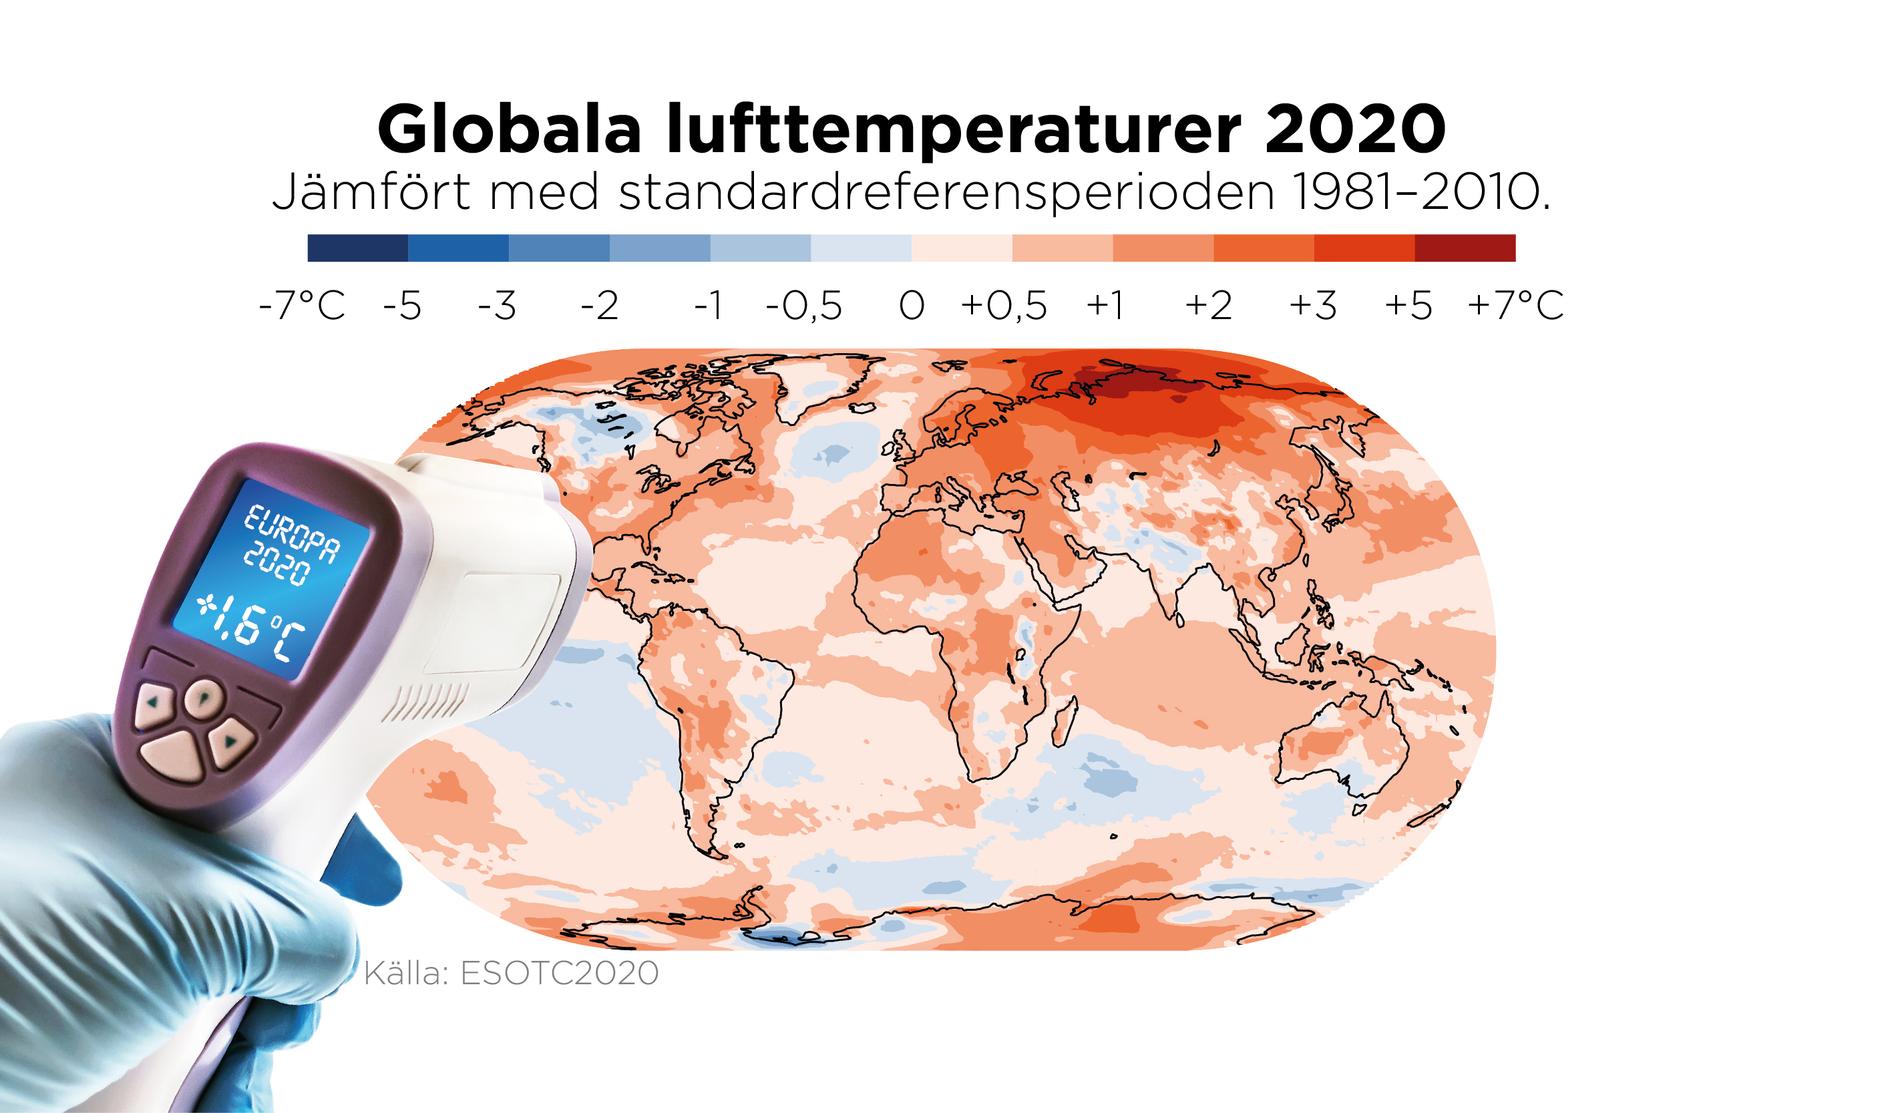 2020 var det varmaste året som har uppmätts i Europa, och det tredje varmaste globalt – trots en kylande La Niña (syns kring ekvatorn vid Stilla havet).